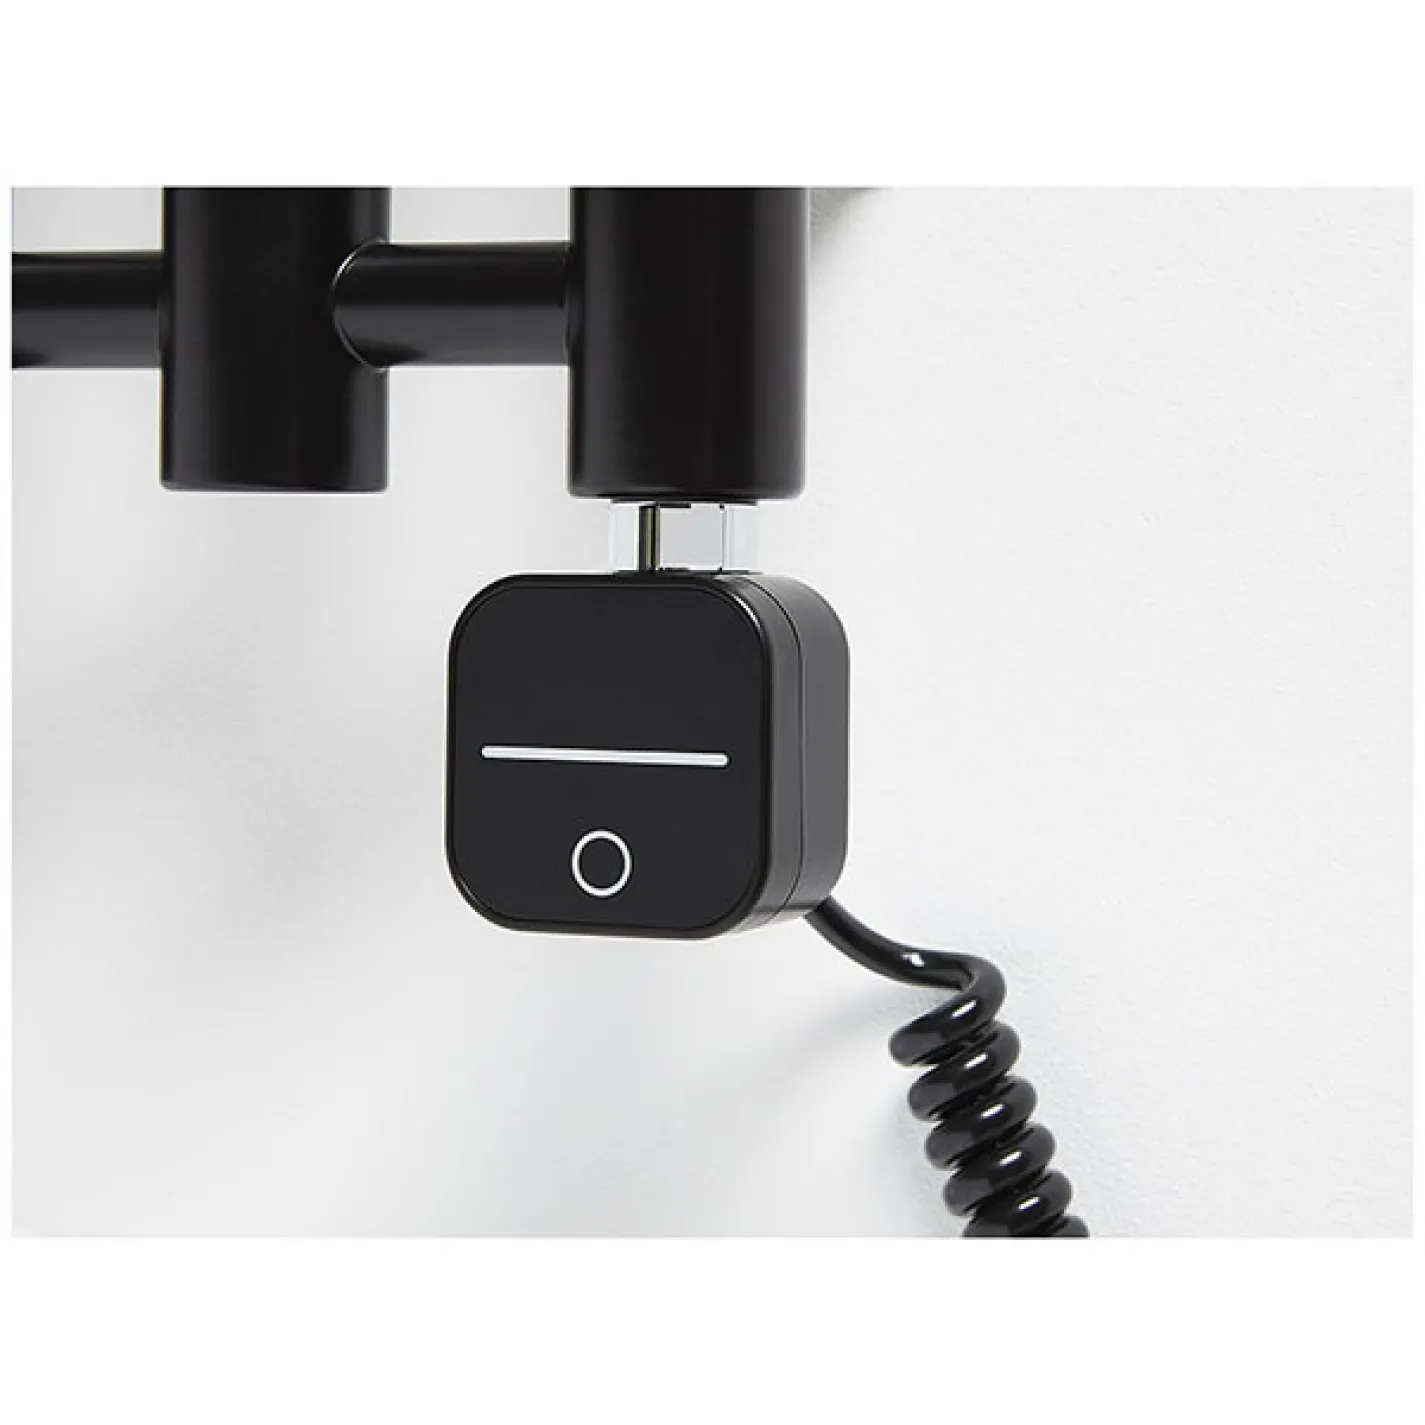 ТЭН Zehnder NEX для полотенцесушителя 600 Вт 868MHz Bluetooth с кабелем черный - Фото 2